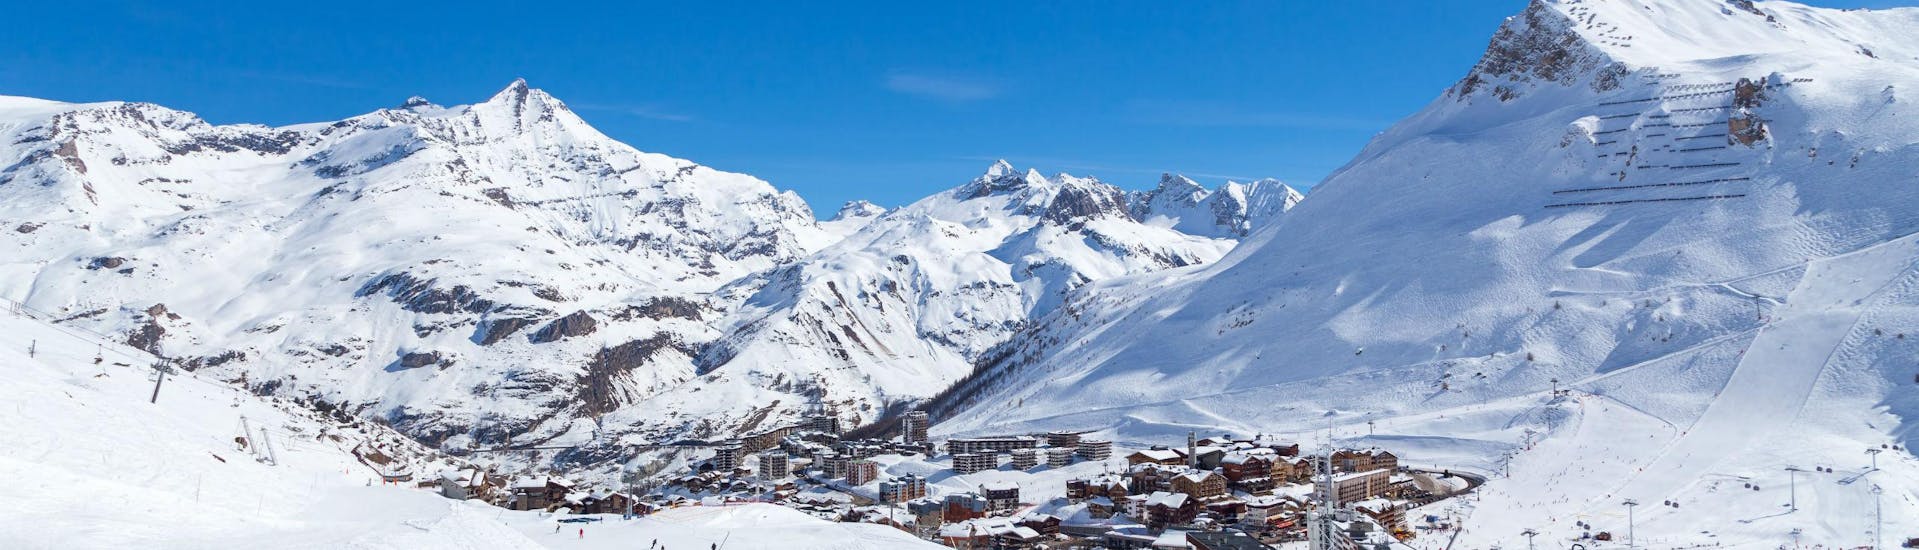 Une vue de la station de ski de Tignes sous un grand ciel bleu, avec ses nombreuses pistes utilisées par les écoles de ski locales pour leurs cours de ski.